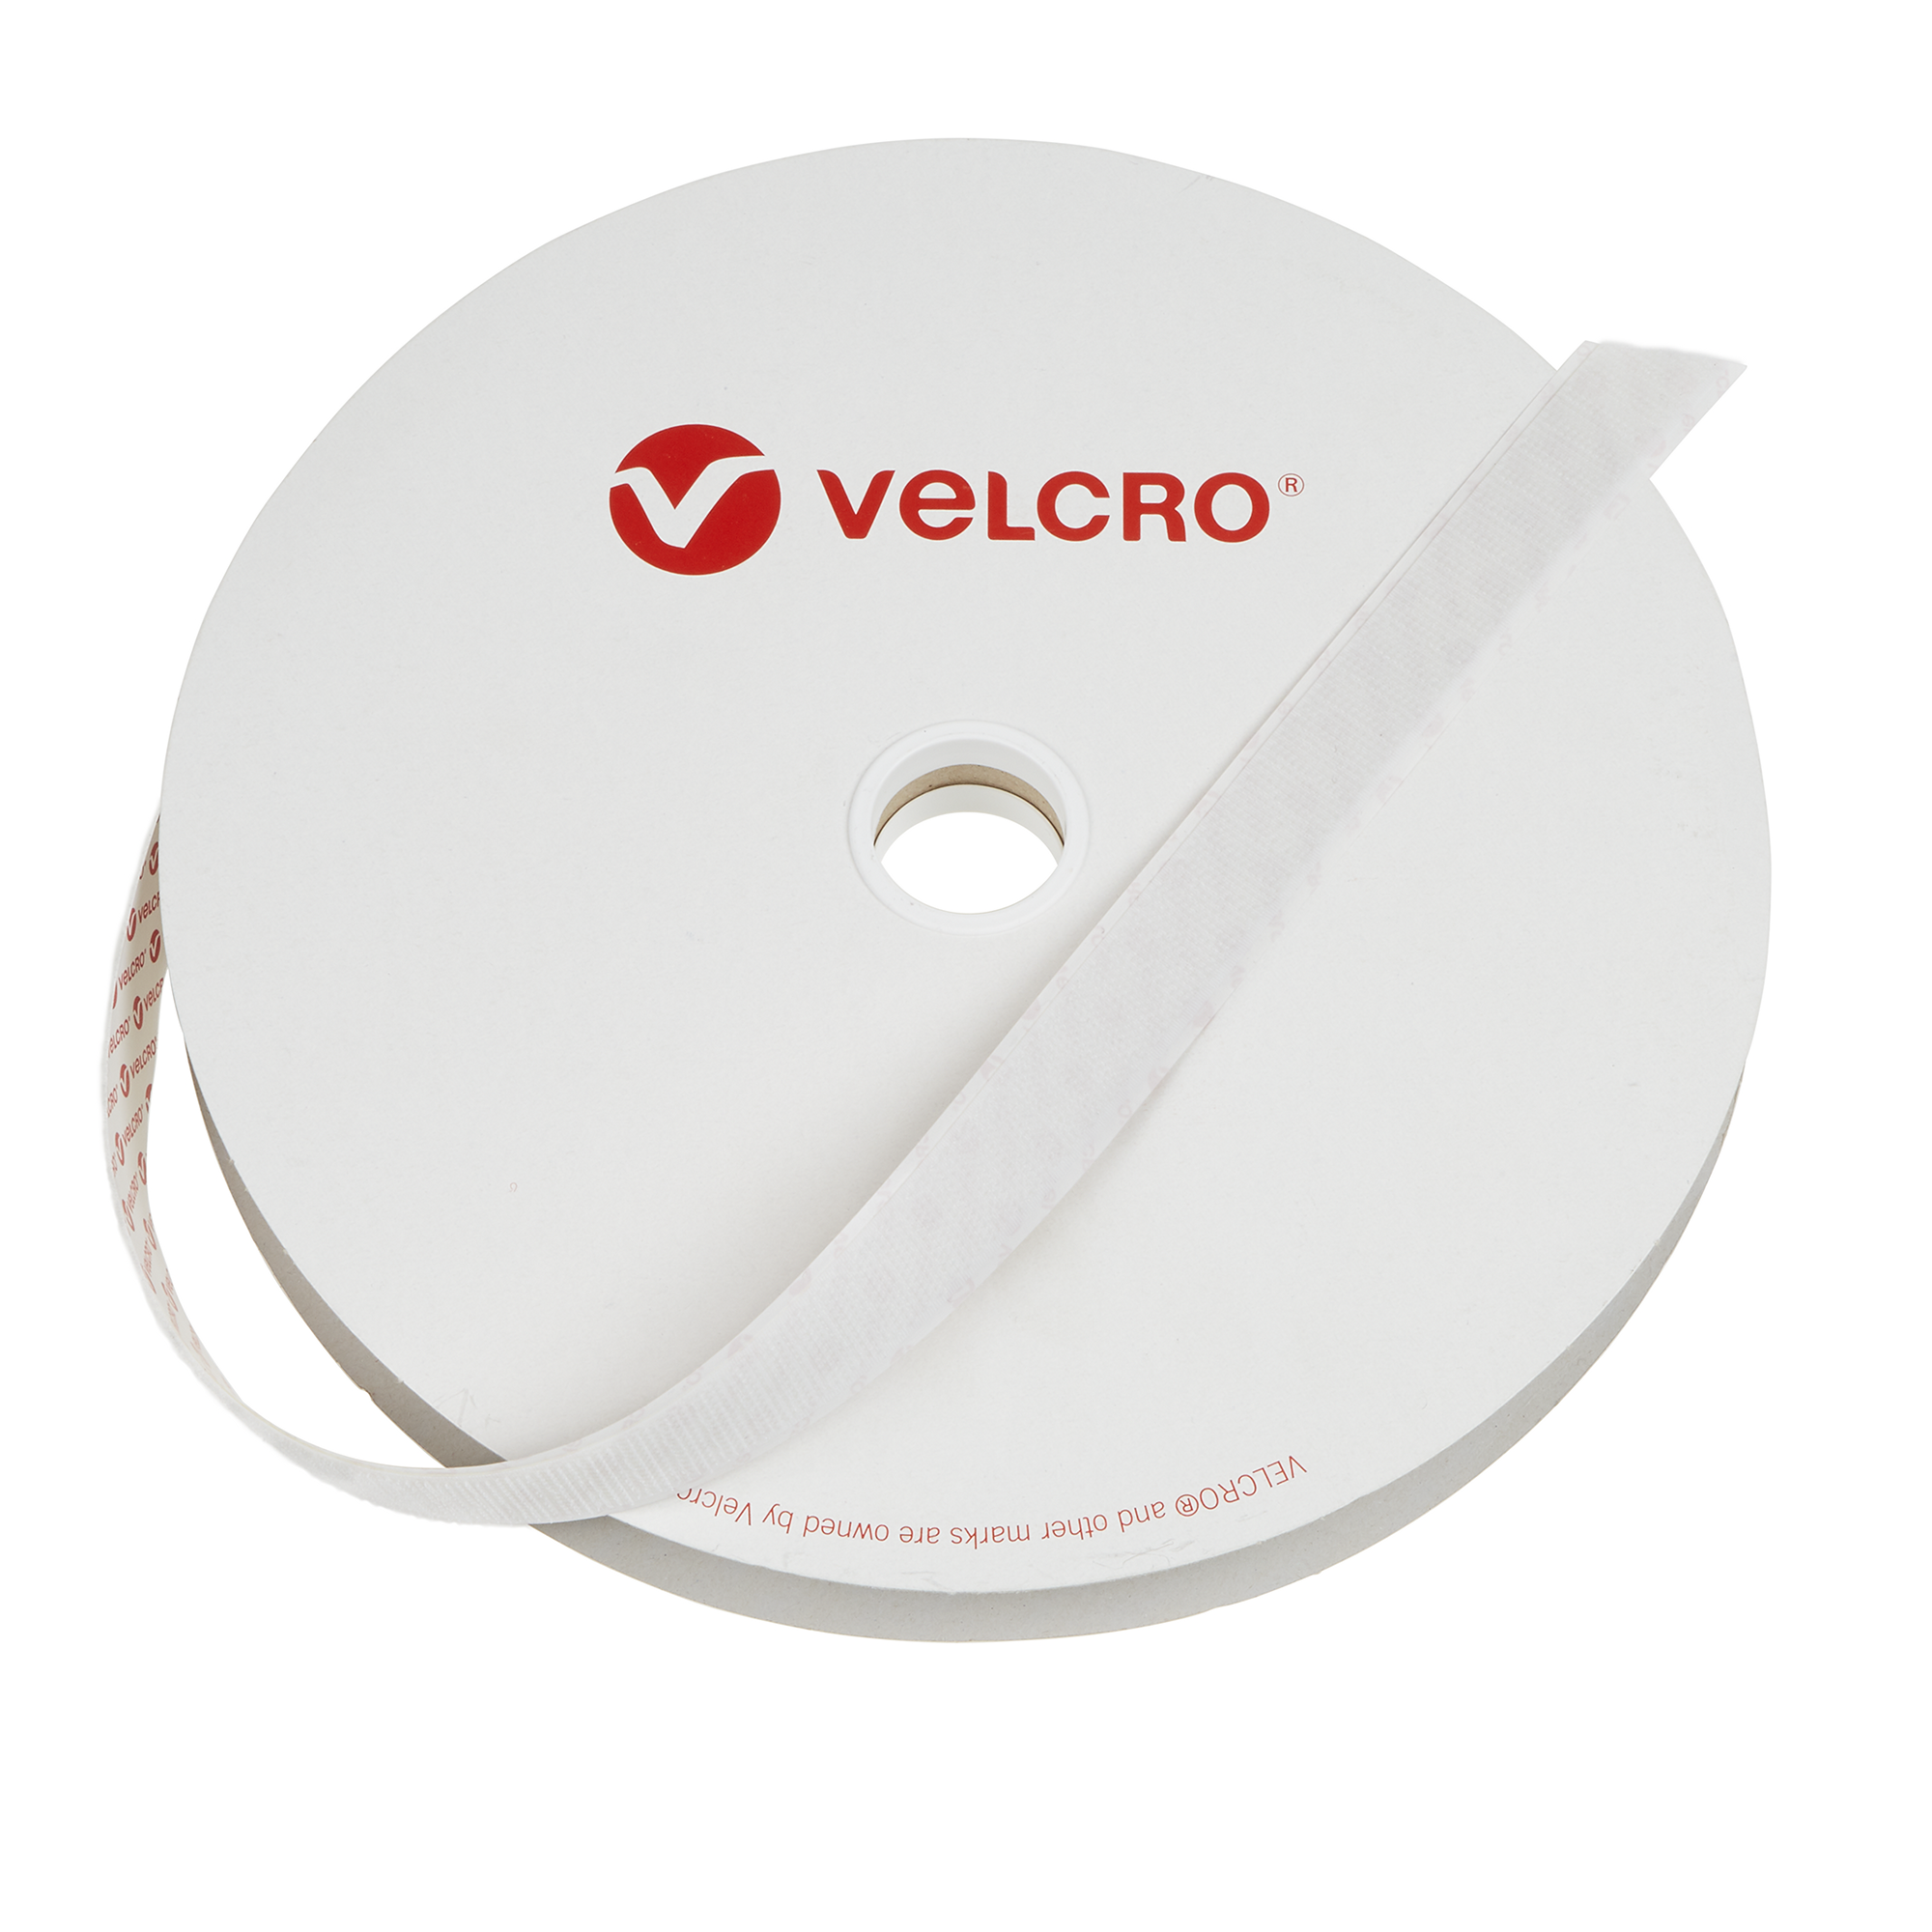 Velcro Brand Adhesive Hook Tape White